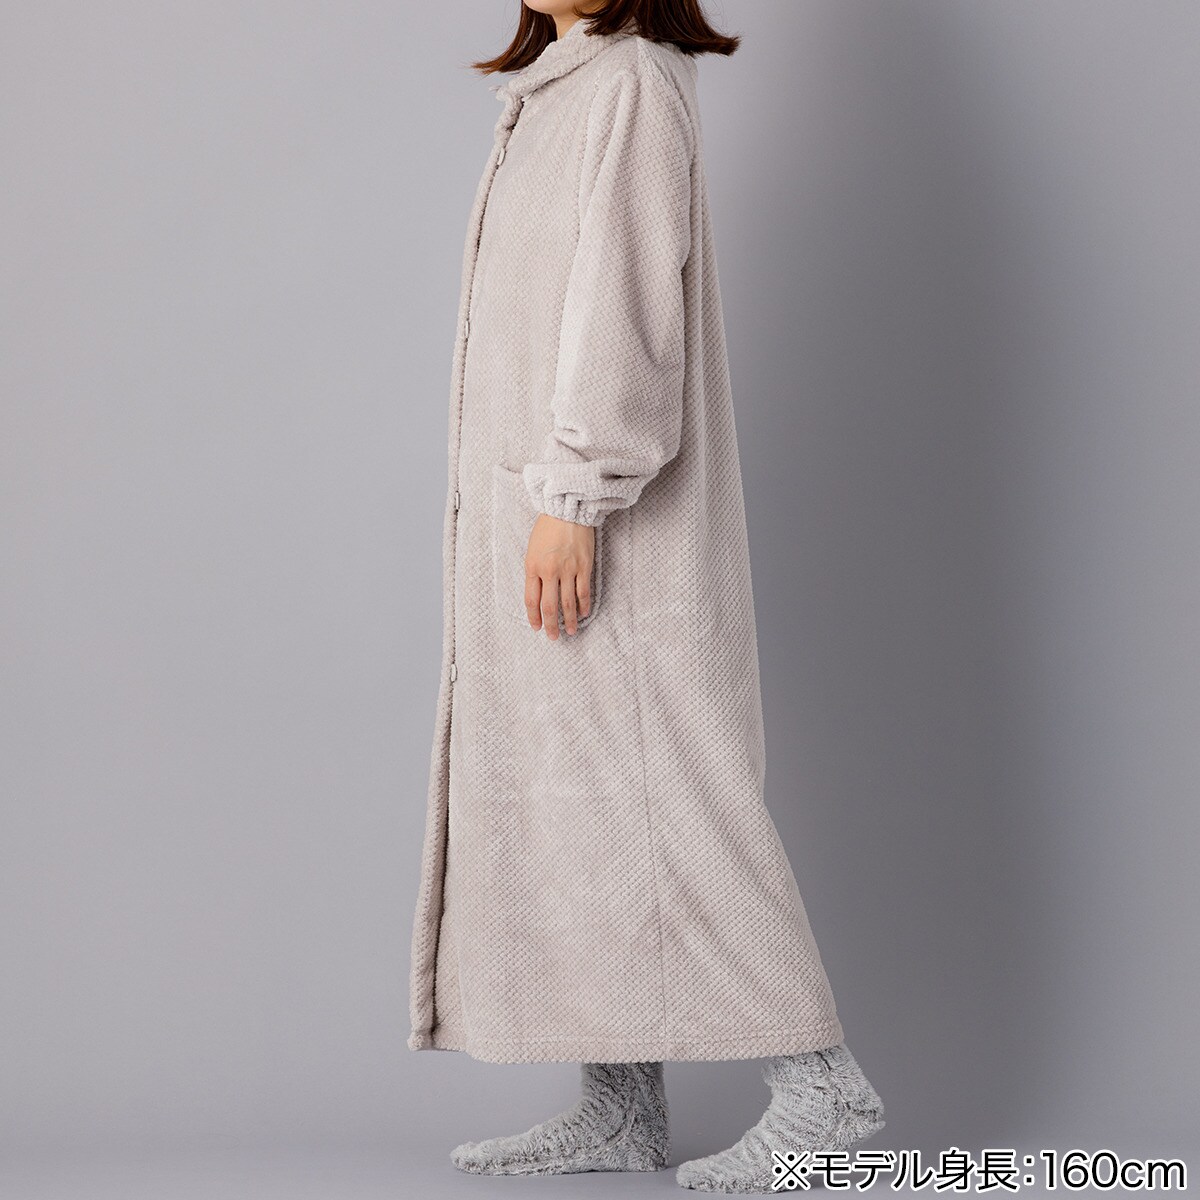 【デコホーム商品】着る毛布(Nウォーム パイナップルボアGY KM06 120)   【1年保証】